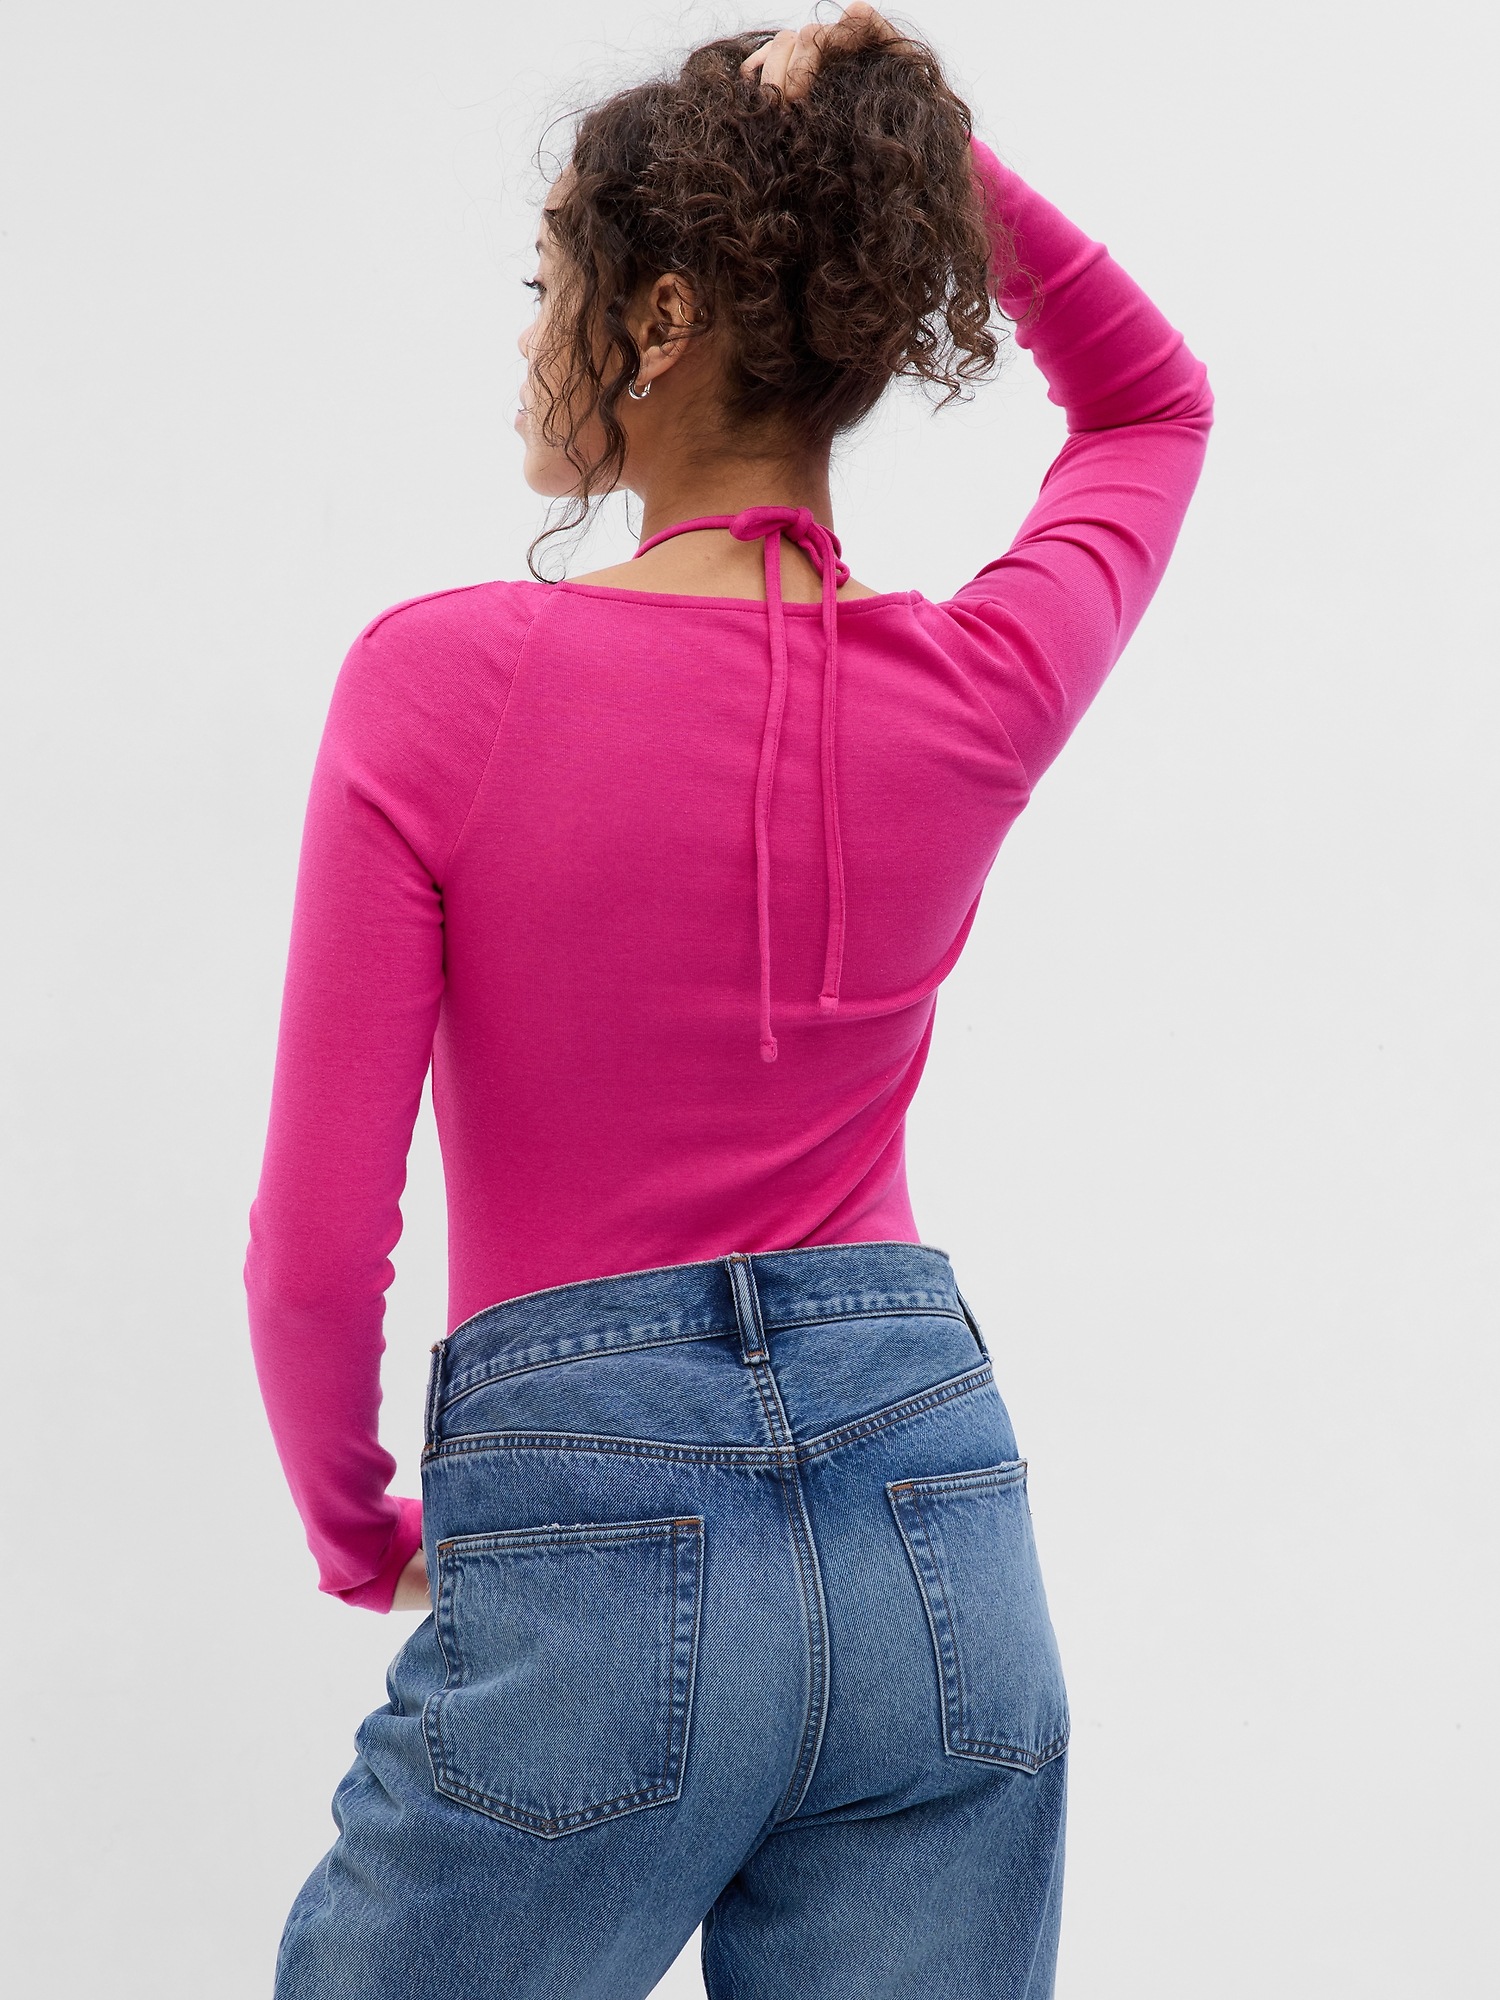 SweatyRocks Women's Heart Print Backless Tie Back Crop Halter Top